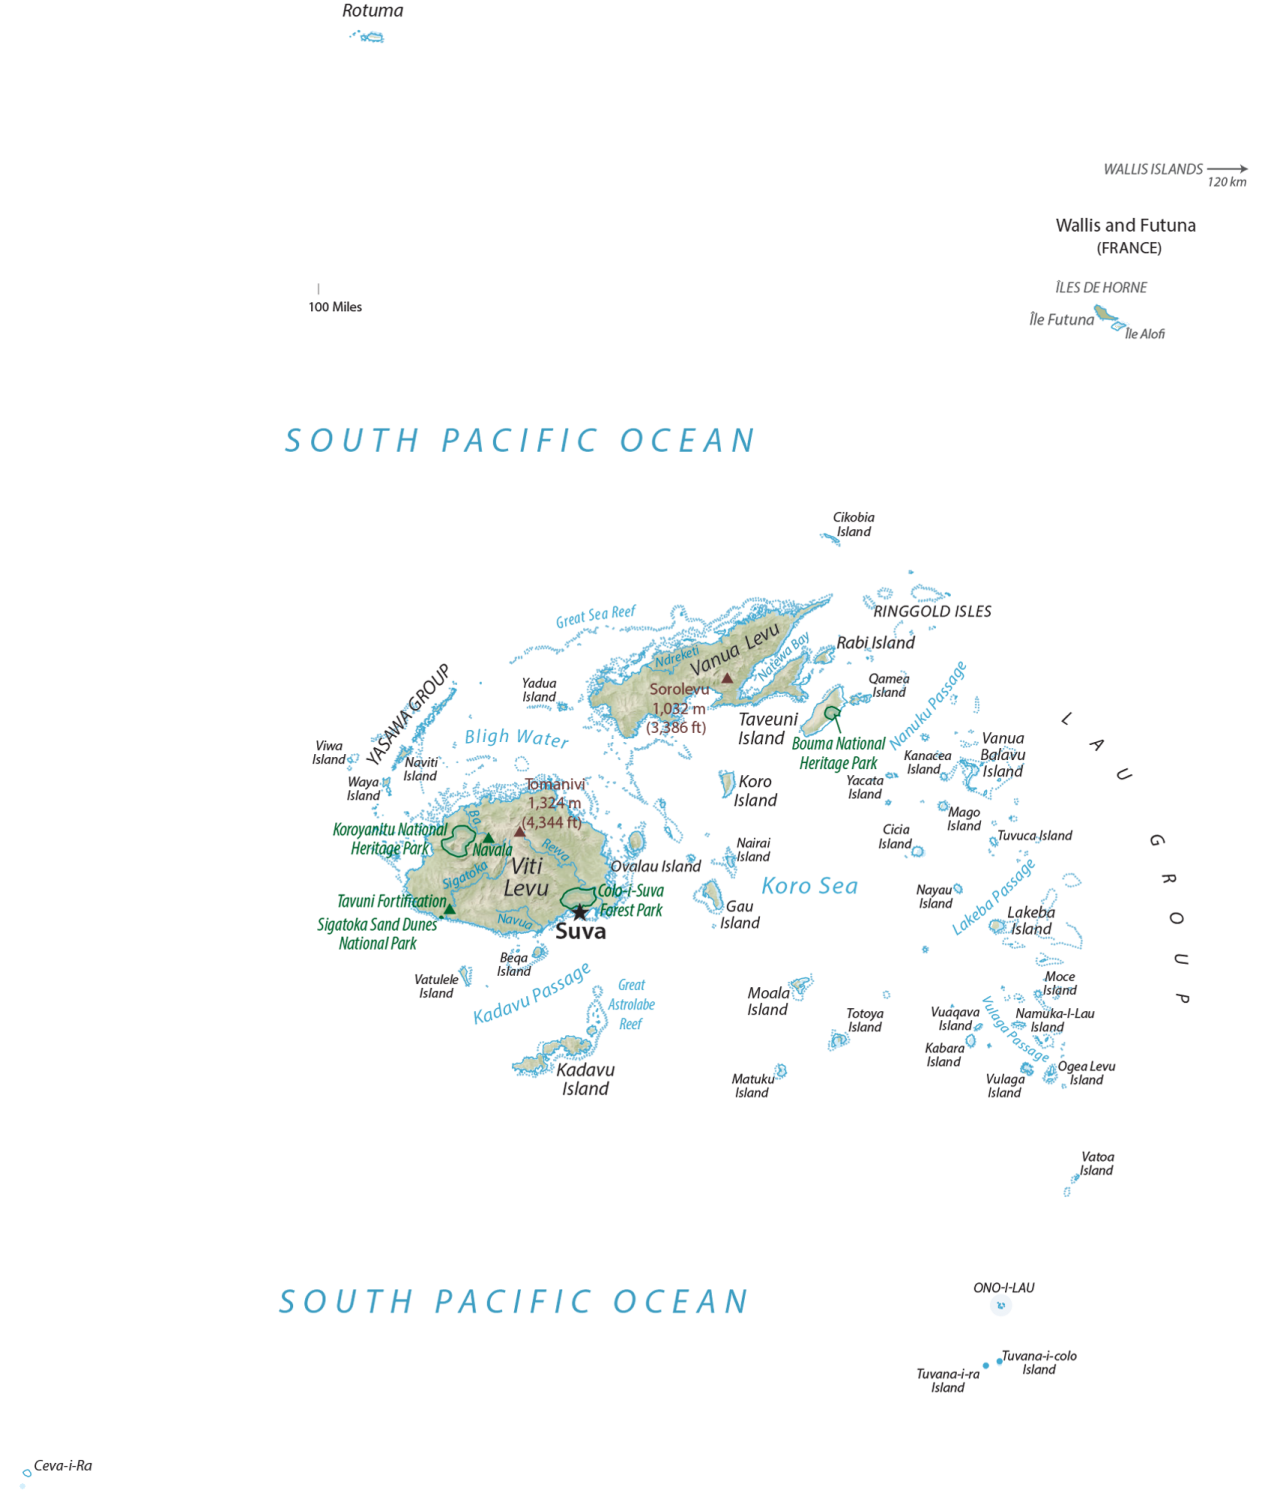 Fiji Physical Map